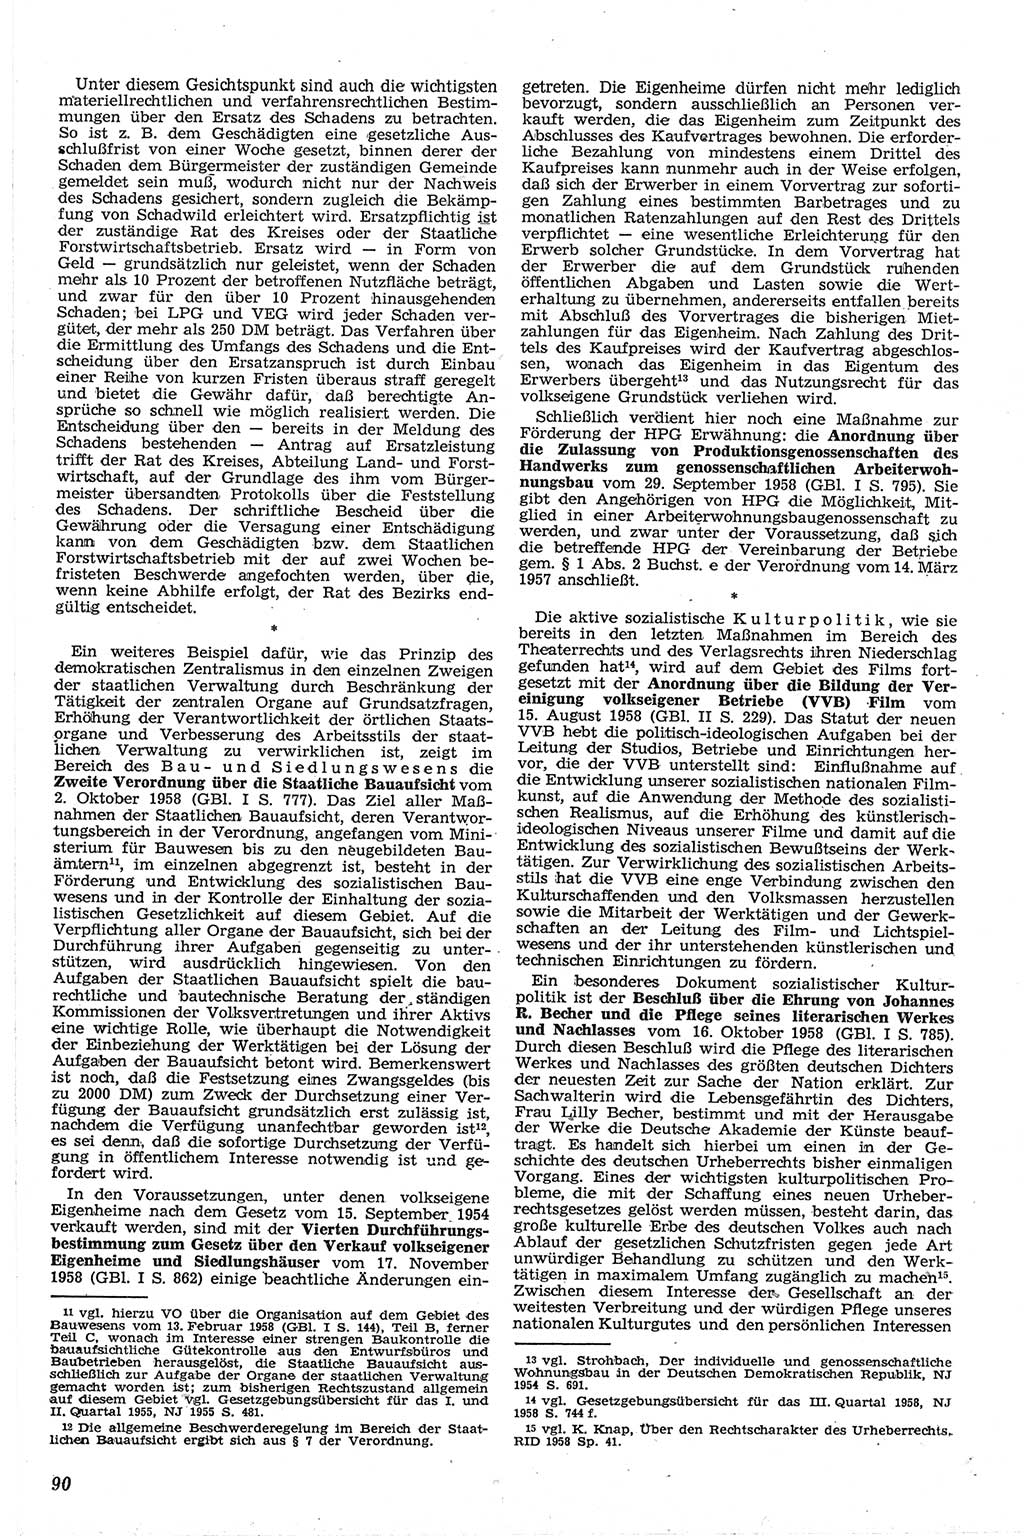 Neue Justiz (NJ), Zeitschrift für Recht und Rechtswissenschaft [Deutsche Demokratische Republik (DDR)], 13. Jahrgang 1959, Seite 90 (NJ DDR 1959, S. 90)